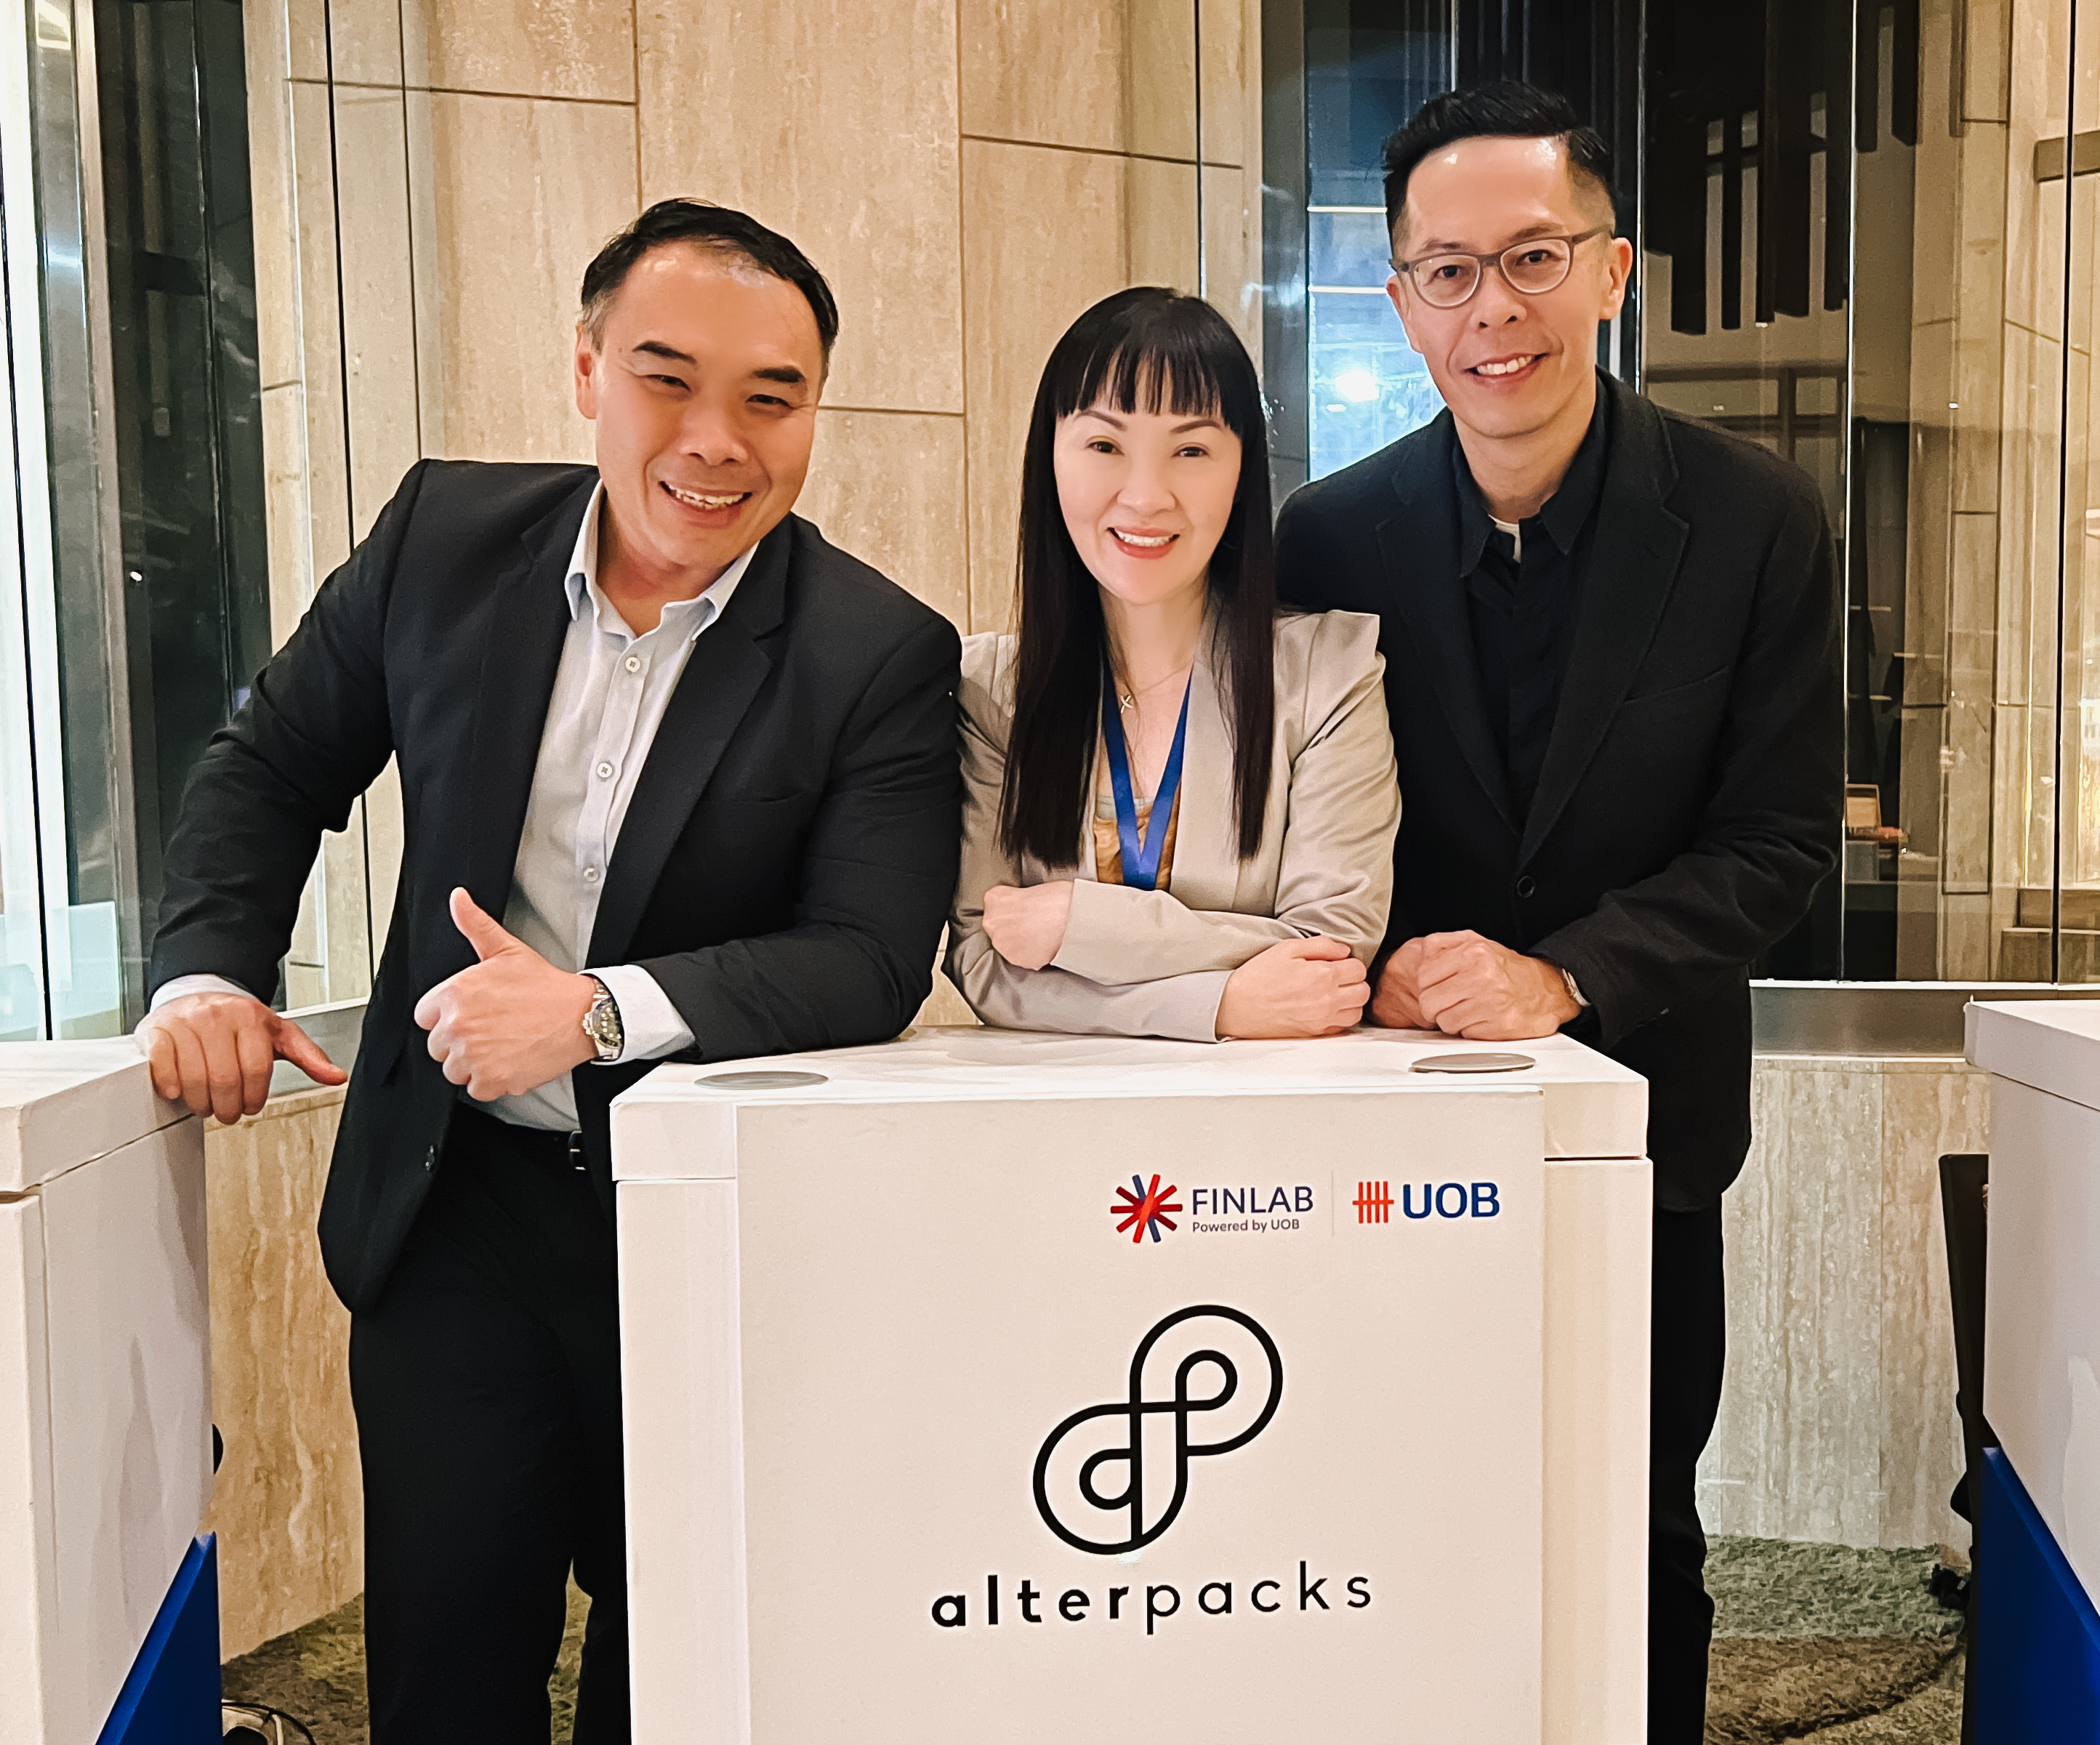 AlterPacks' founding team